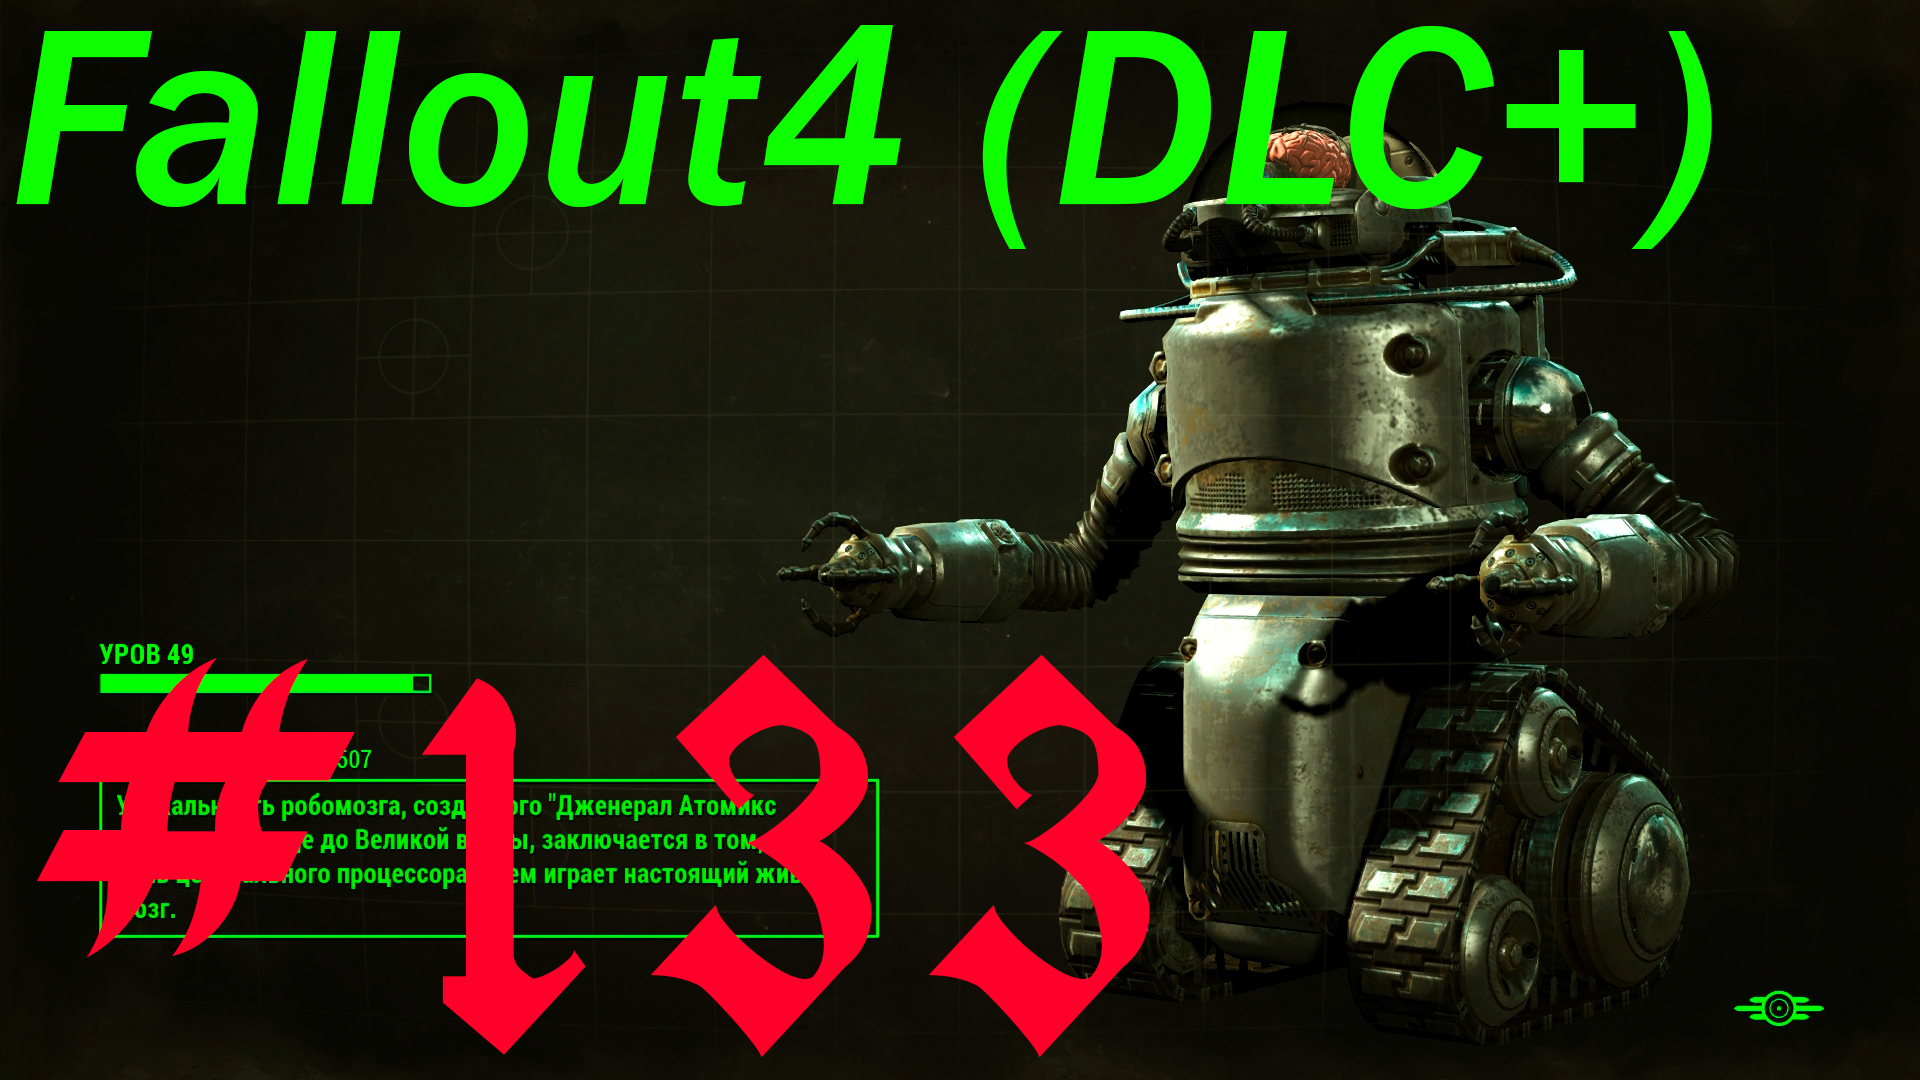 Fallout 4 + DLC, прохождение, часть 133